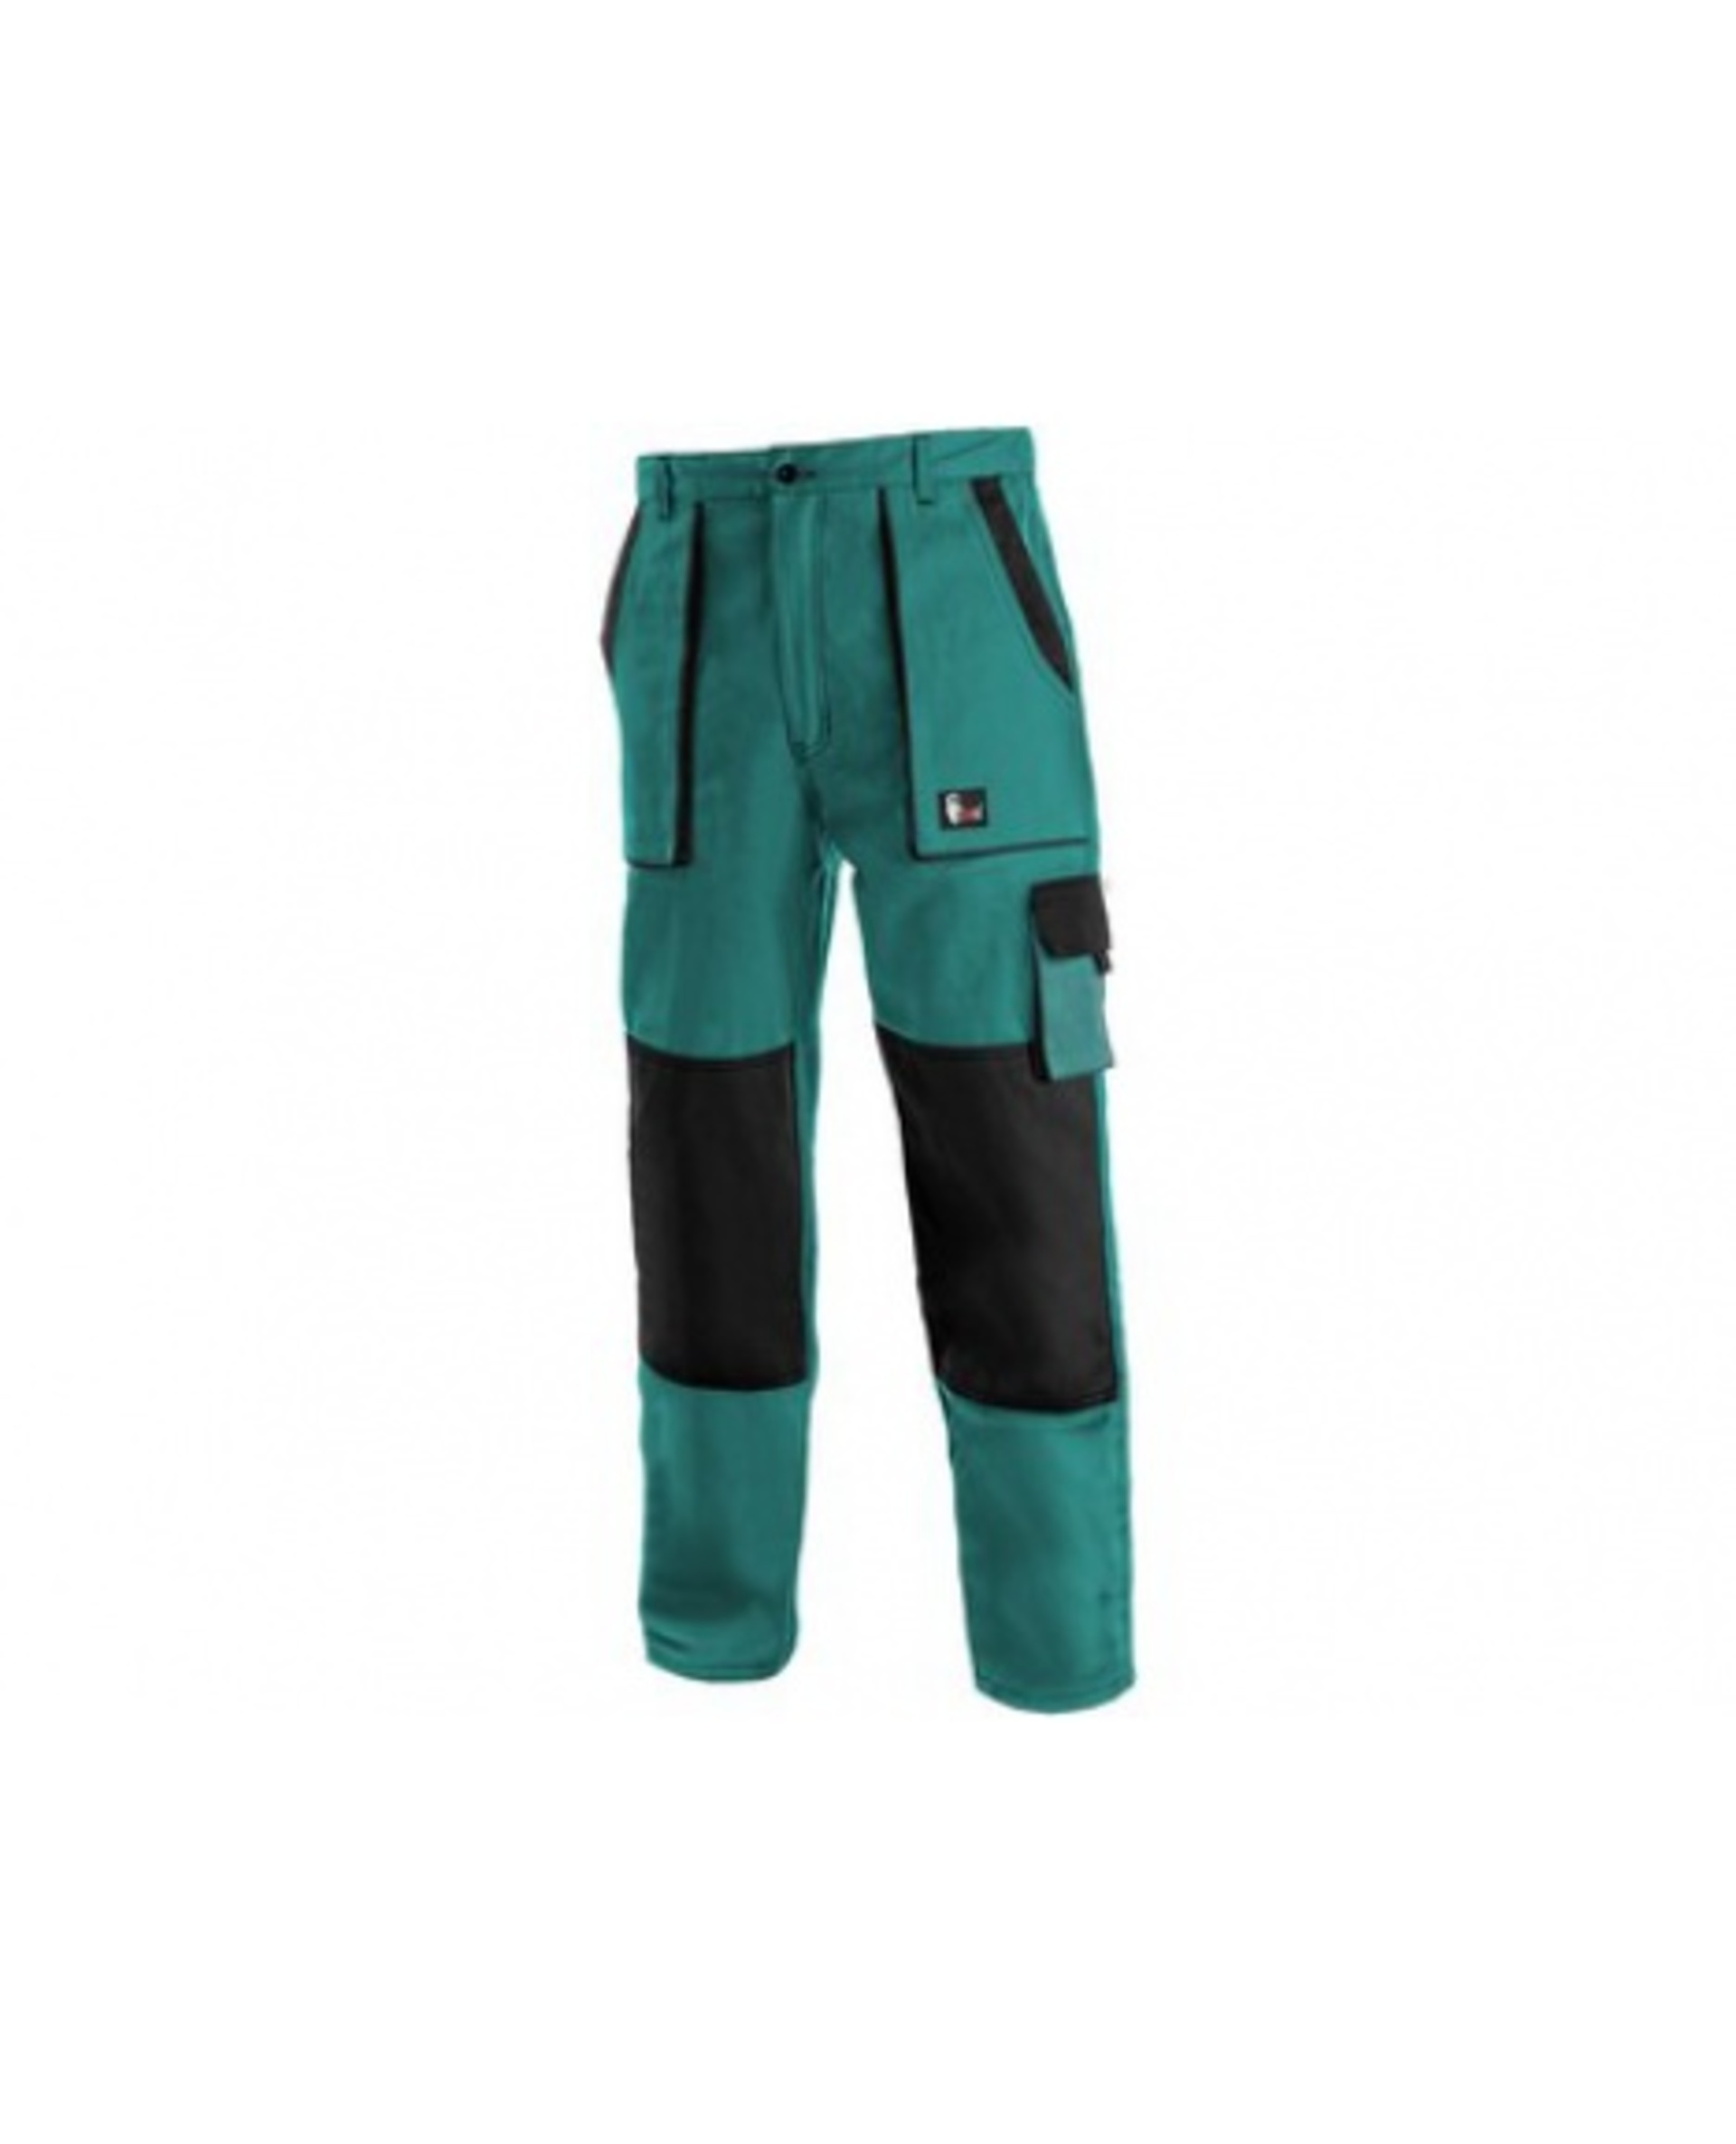 CXS LUXY JOSEF pánské Kalhoty pracovní do pasu zelená/černá 50